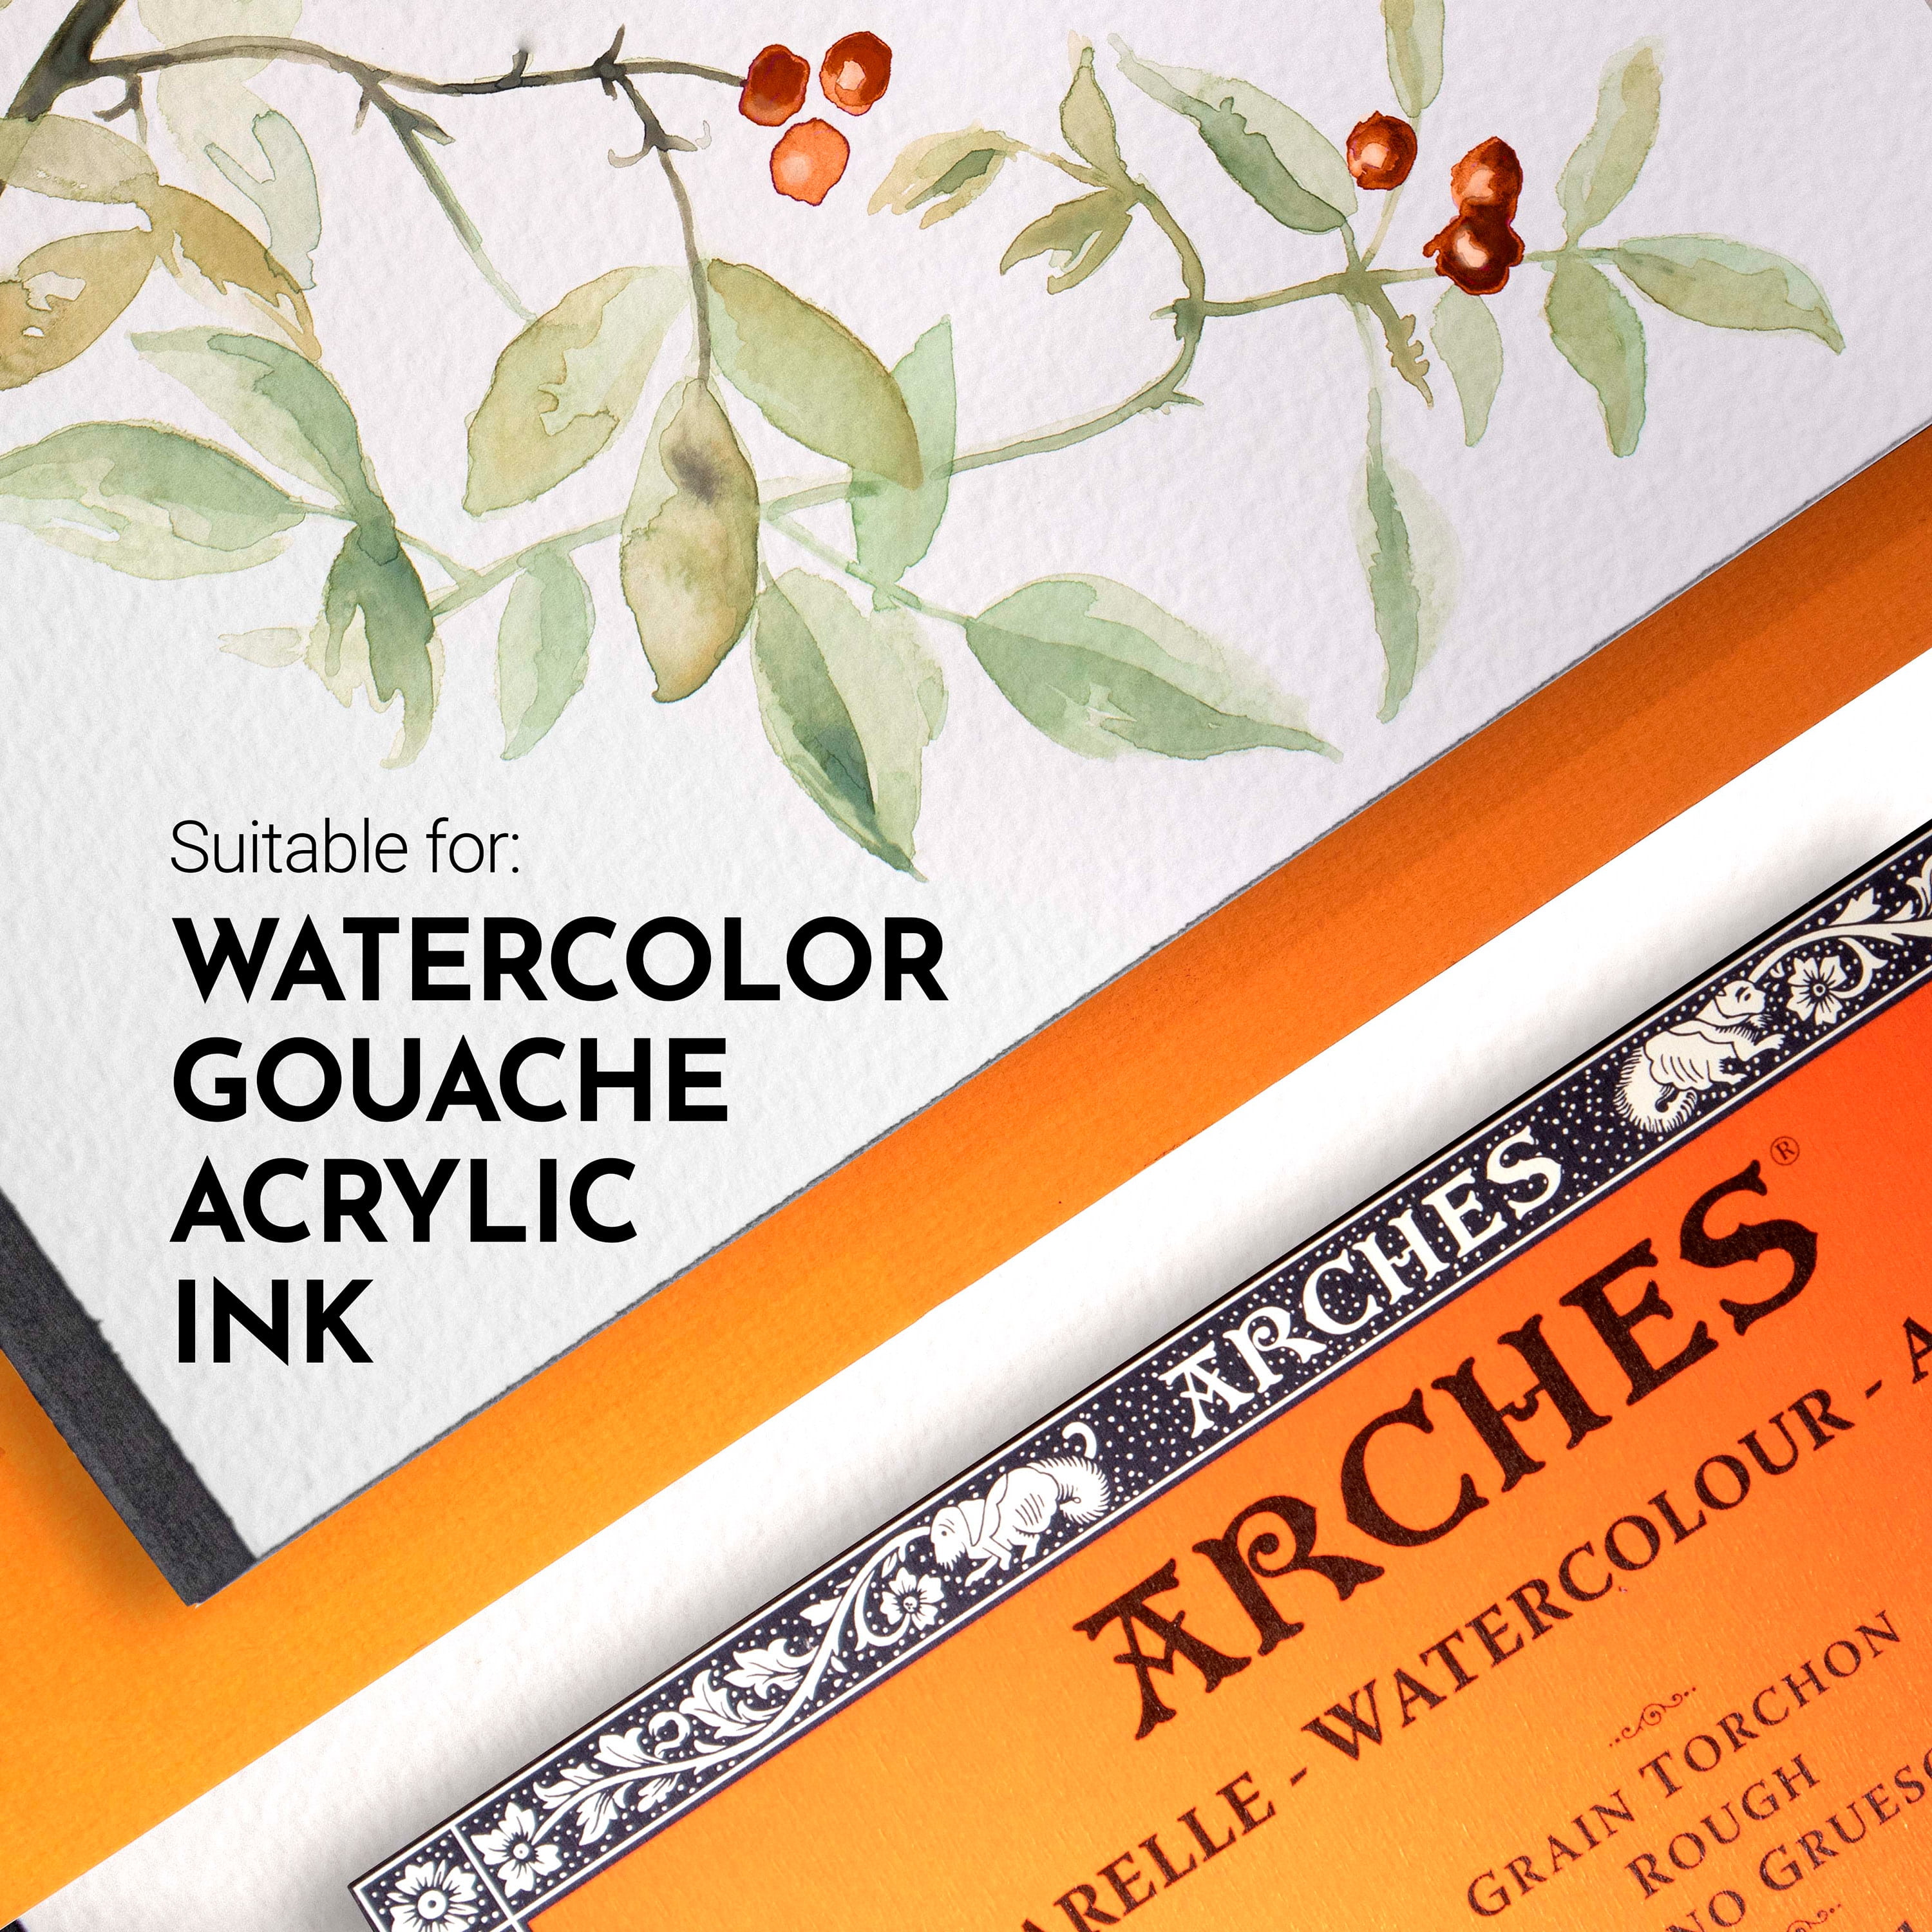 Aquarelle Arches Watercolor Block 8x8 140lb Rough Pure Cotton